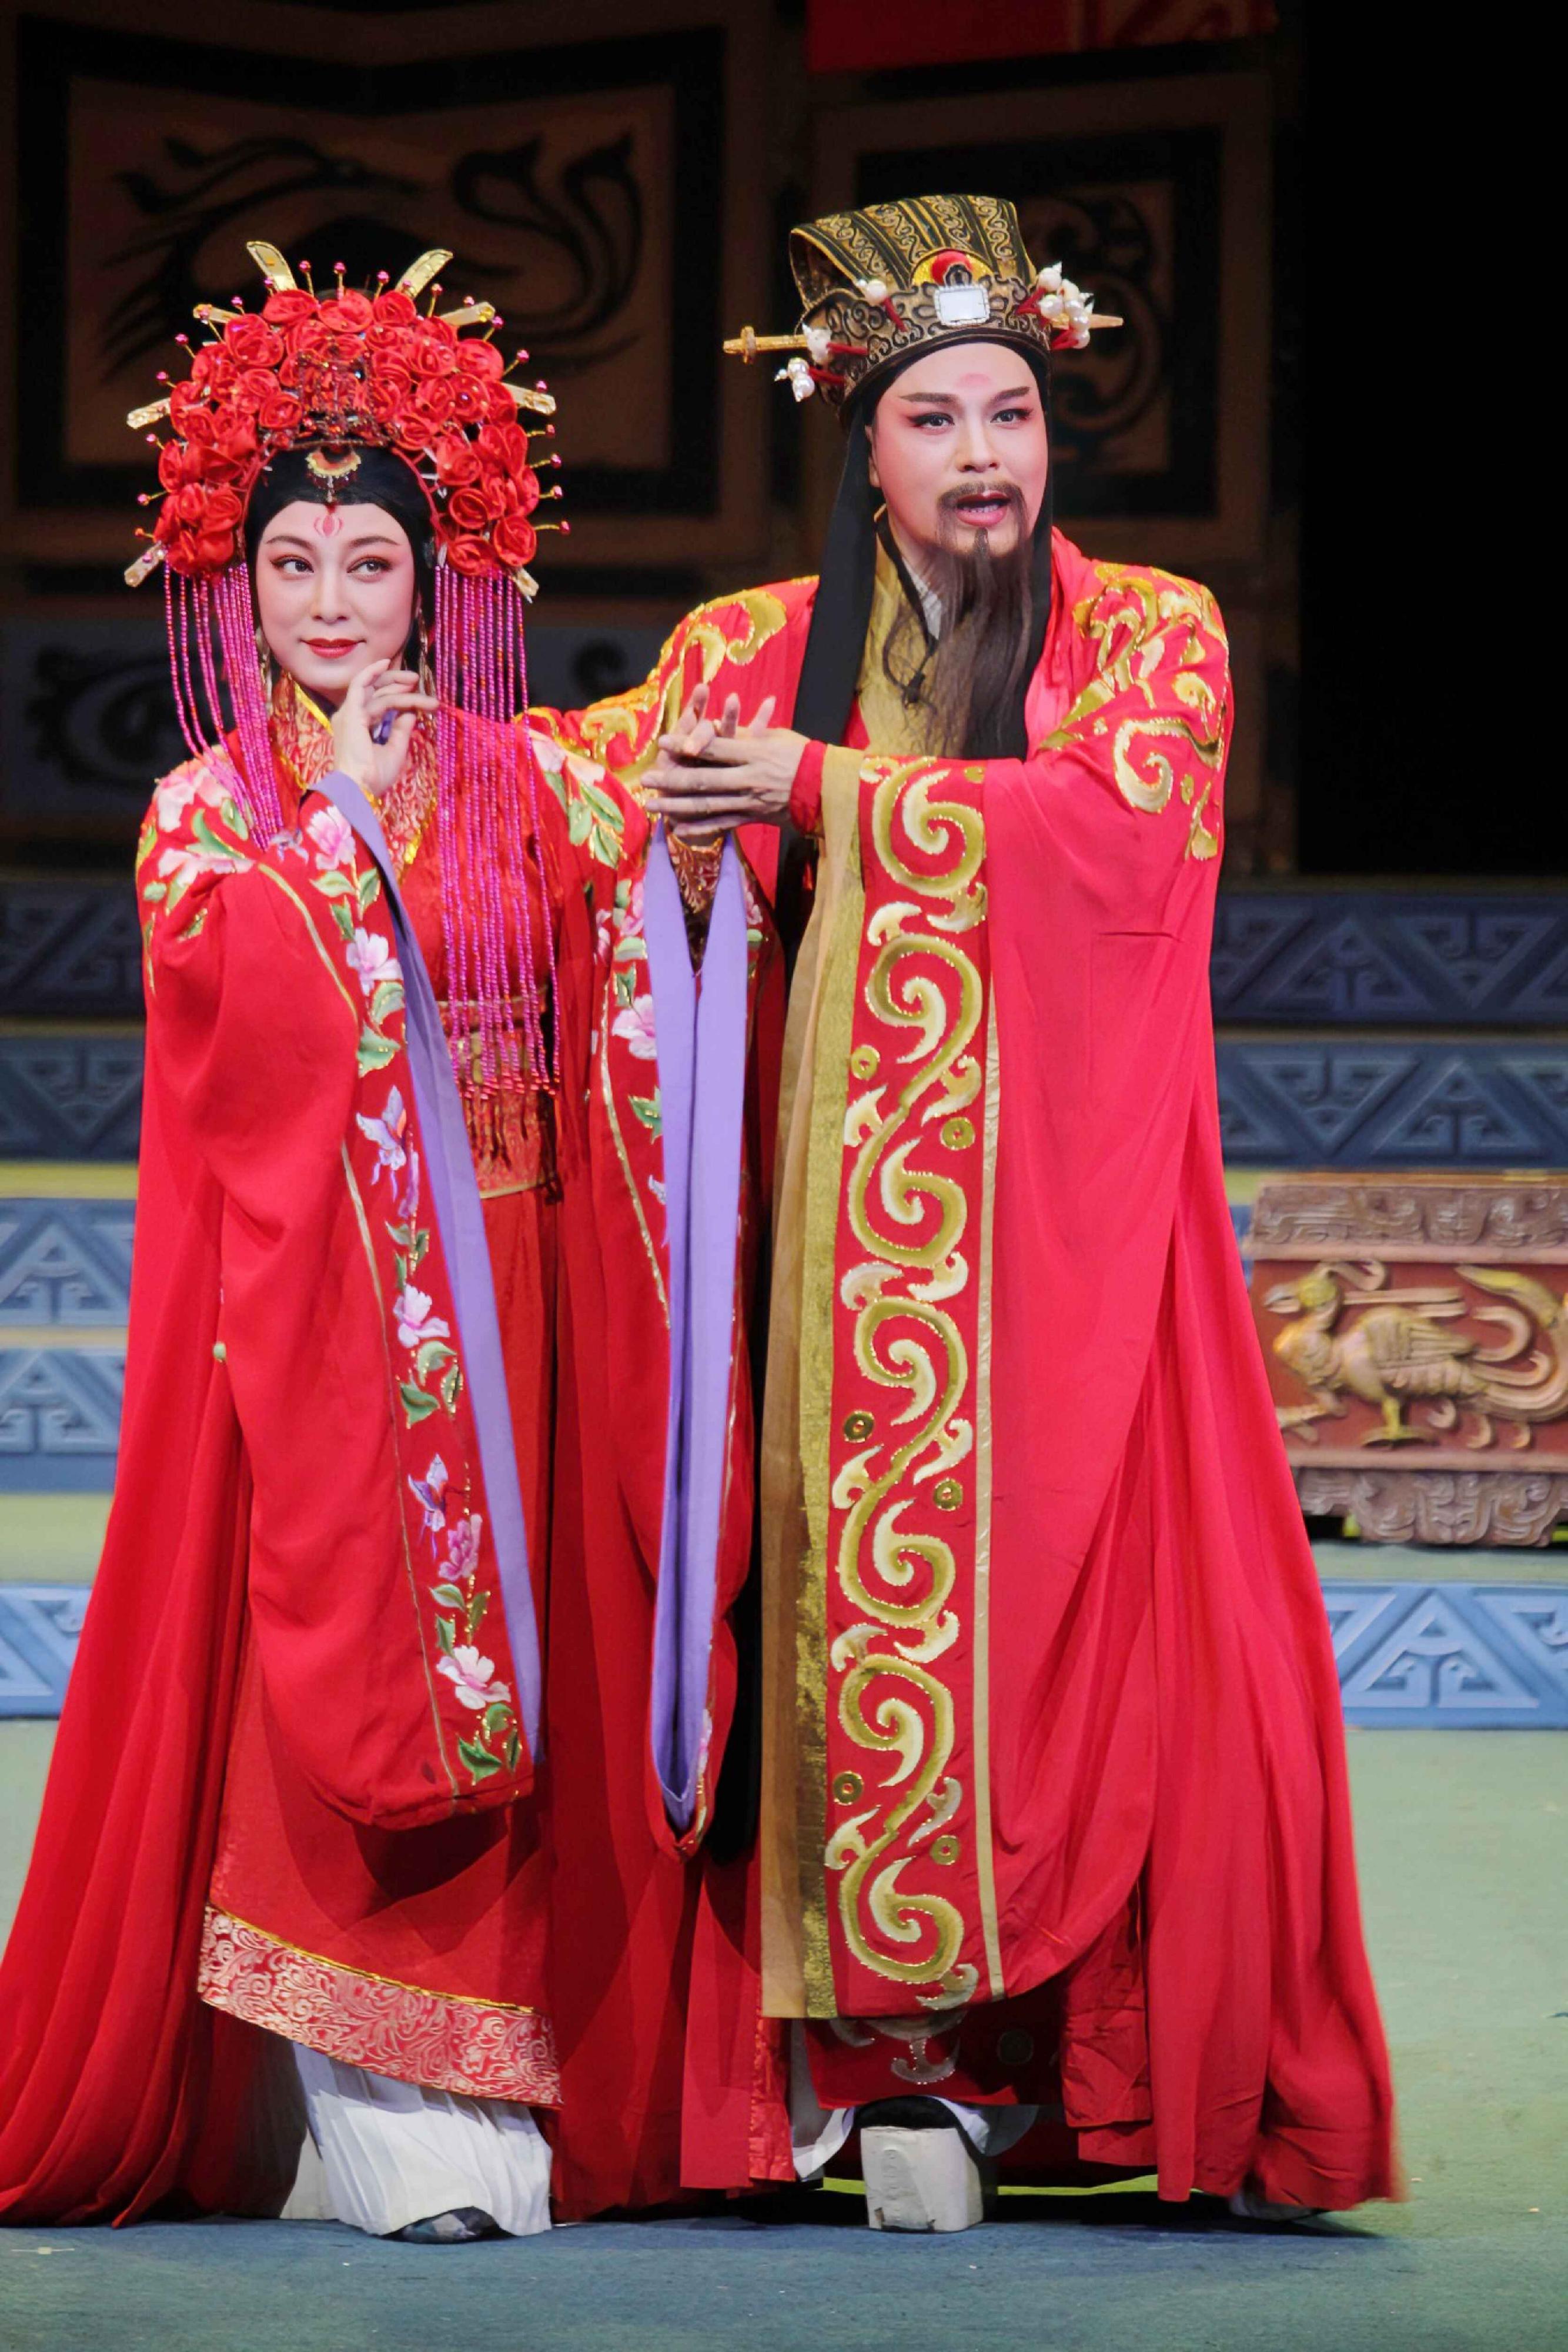 广东潮剧院一团与香港新韩江潮剧团再度携手，于首届「中华文化节」带来三场精彩潮剧。图示《东吴郡主》剧照。